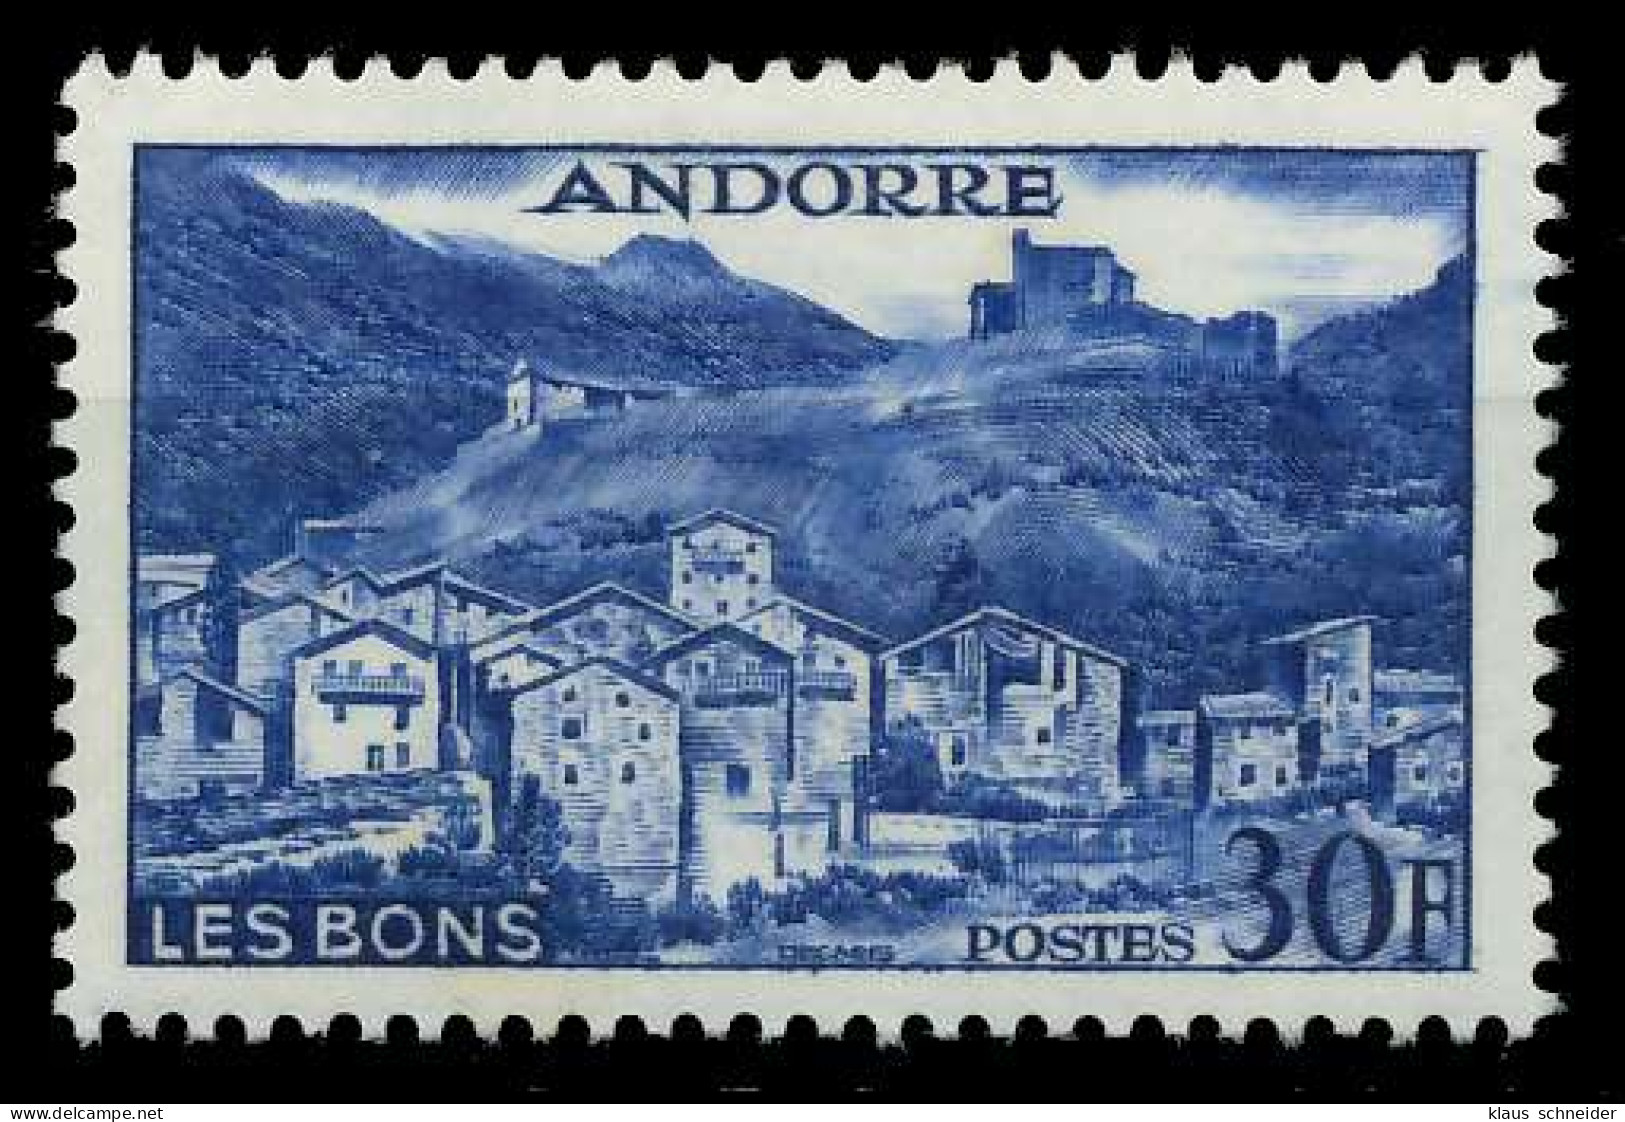 ANDORRA (FRANZ. POST) 1955 Nr 154 Postfrisch X084512 - Unused Stamps